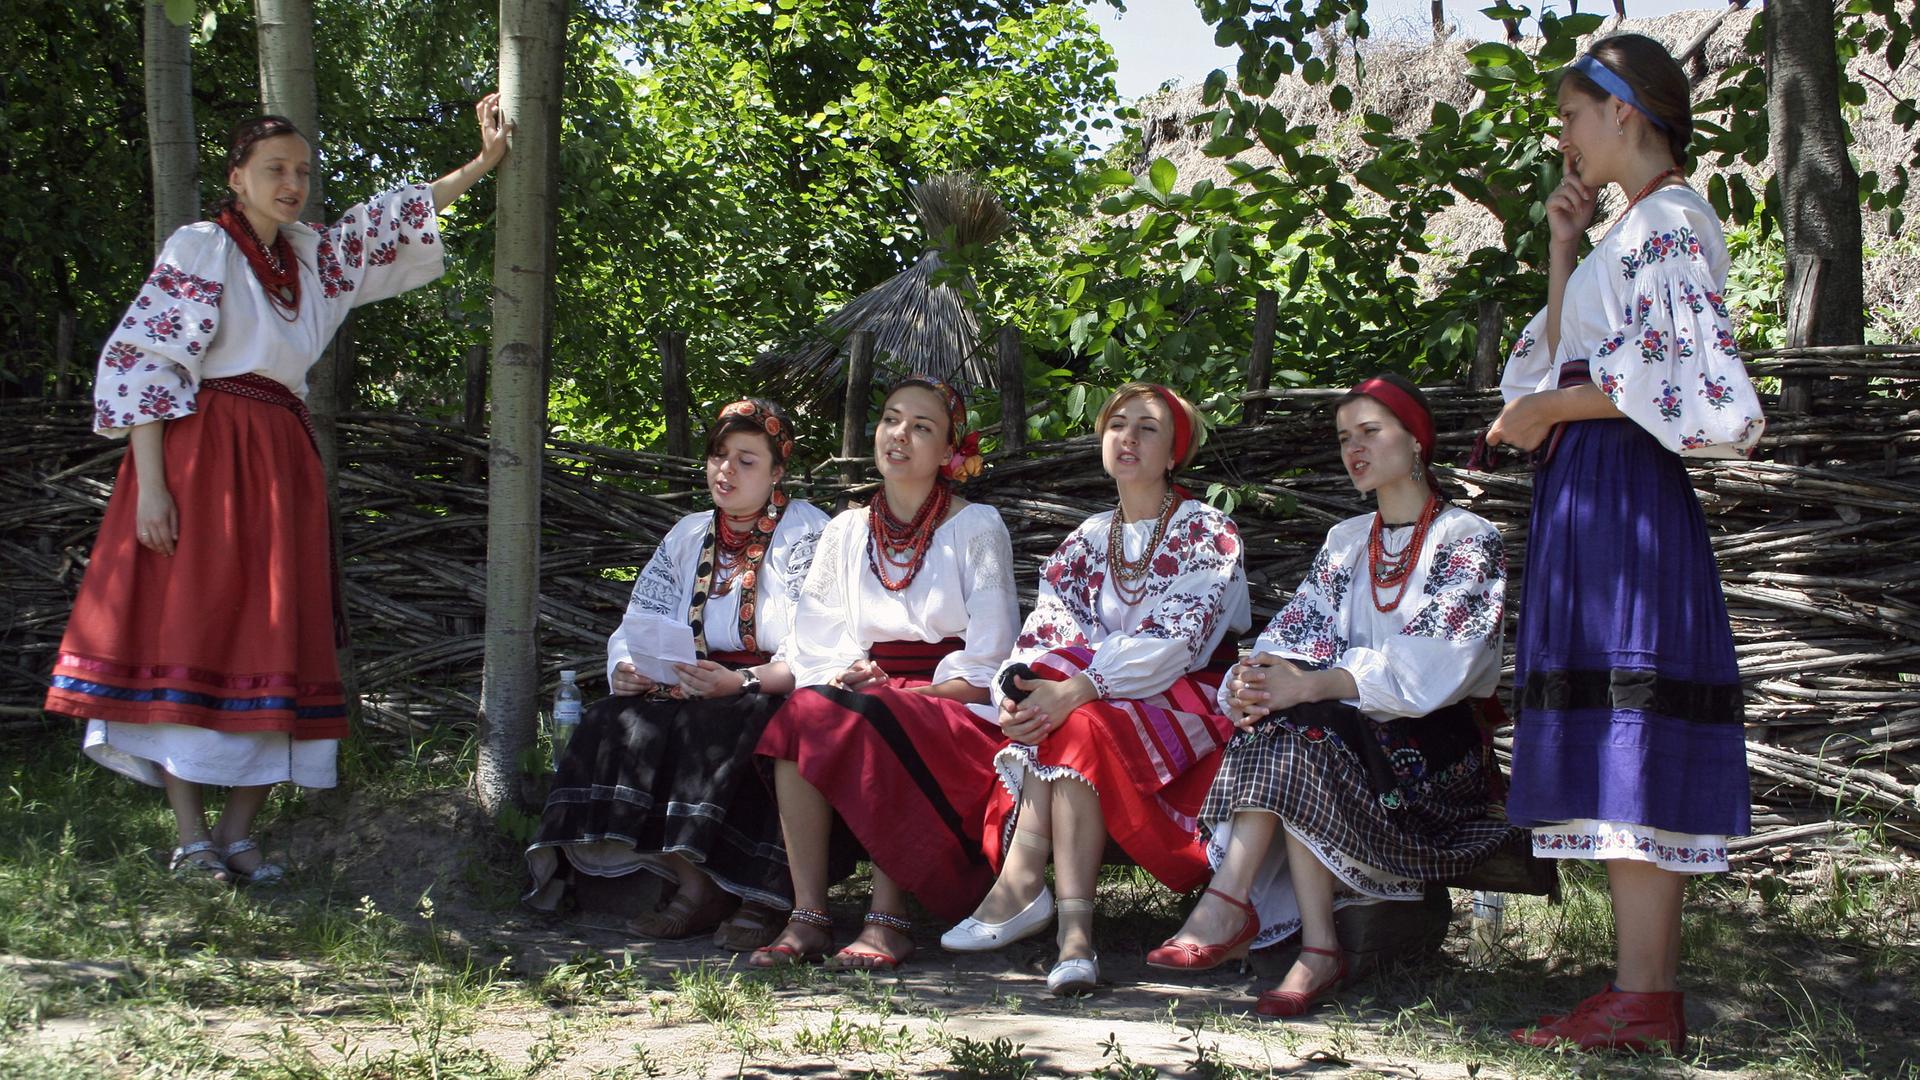 Junge ukrainische Frauen sitzen in traditioneller weißer und bunt gemusterter Kleidung auf einer Bank im Schatten und singen.